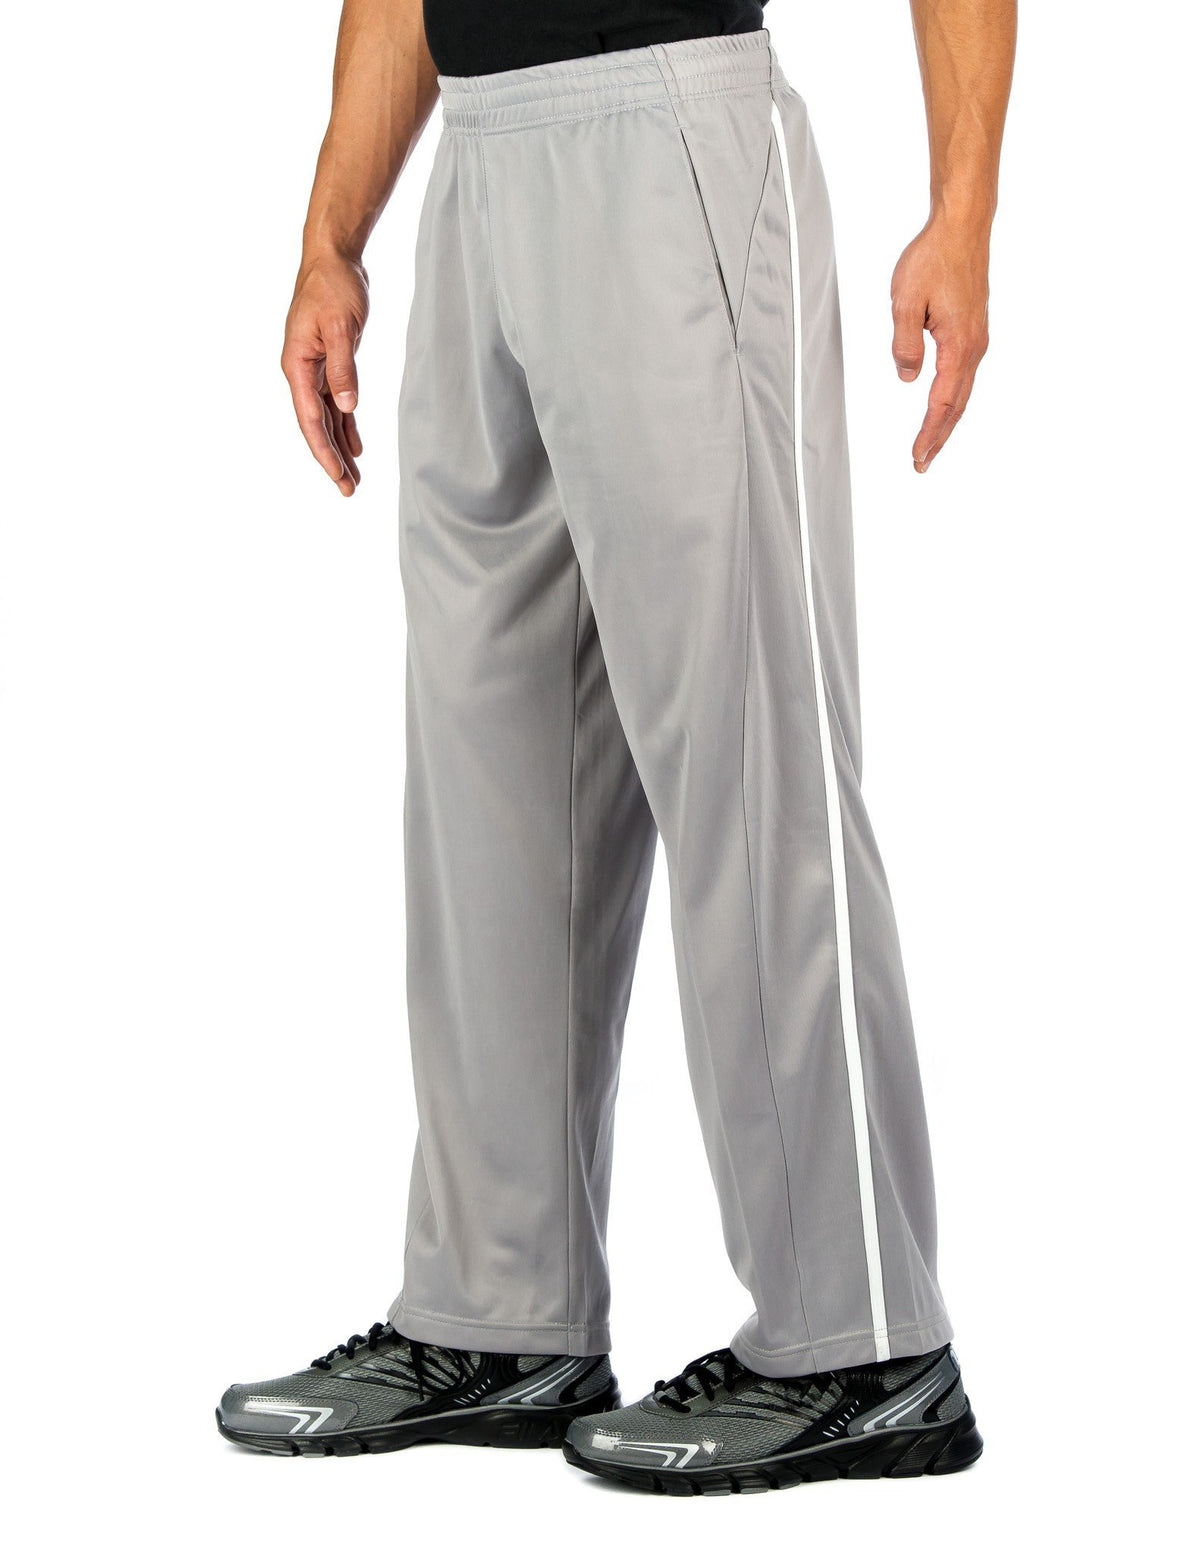 Men's Active Pants - Grey